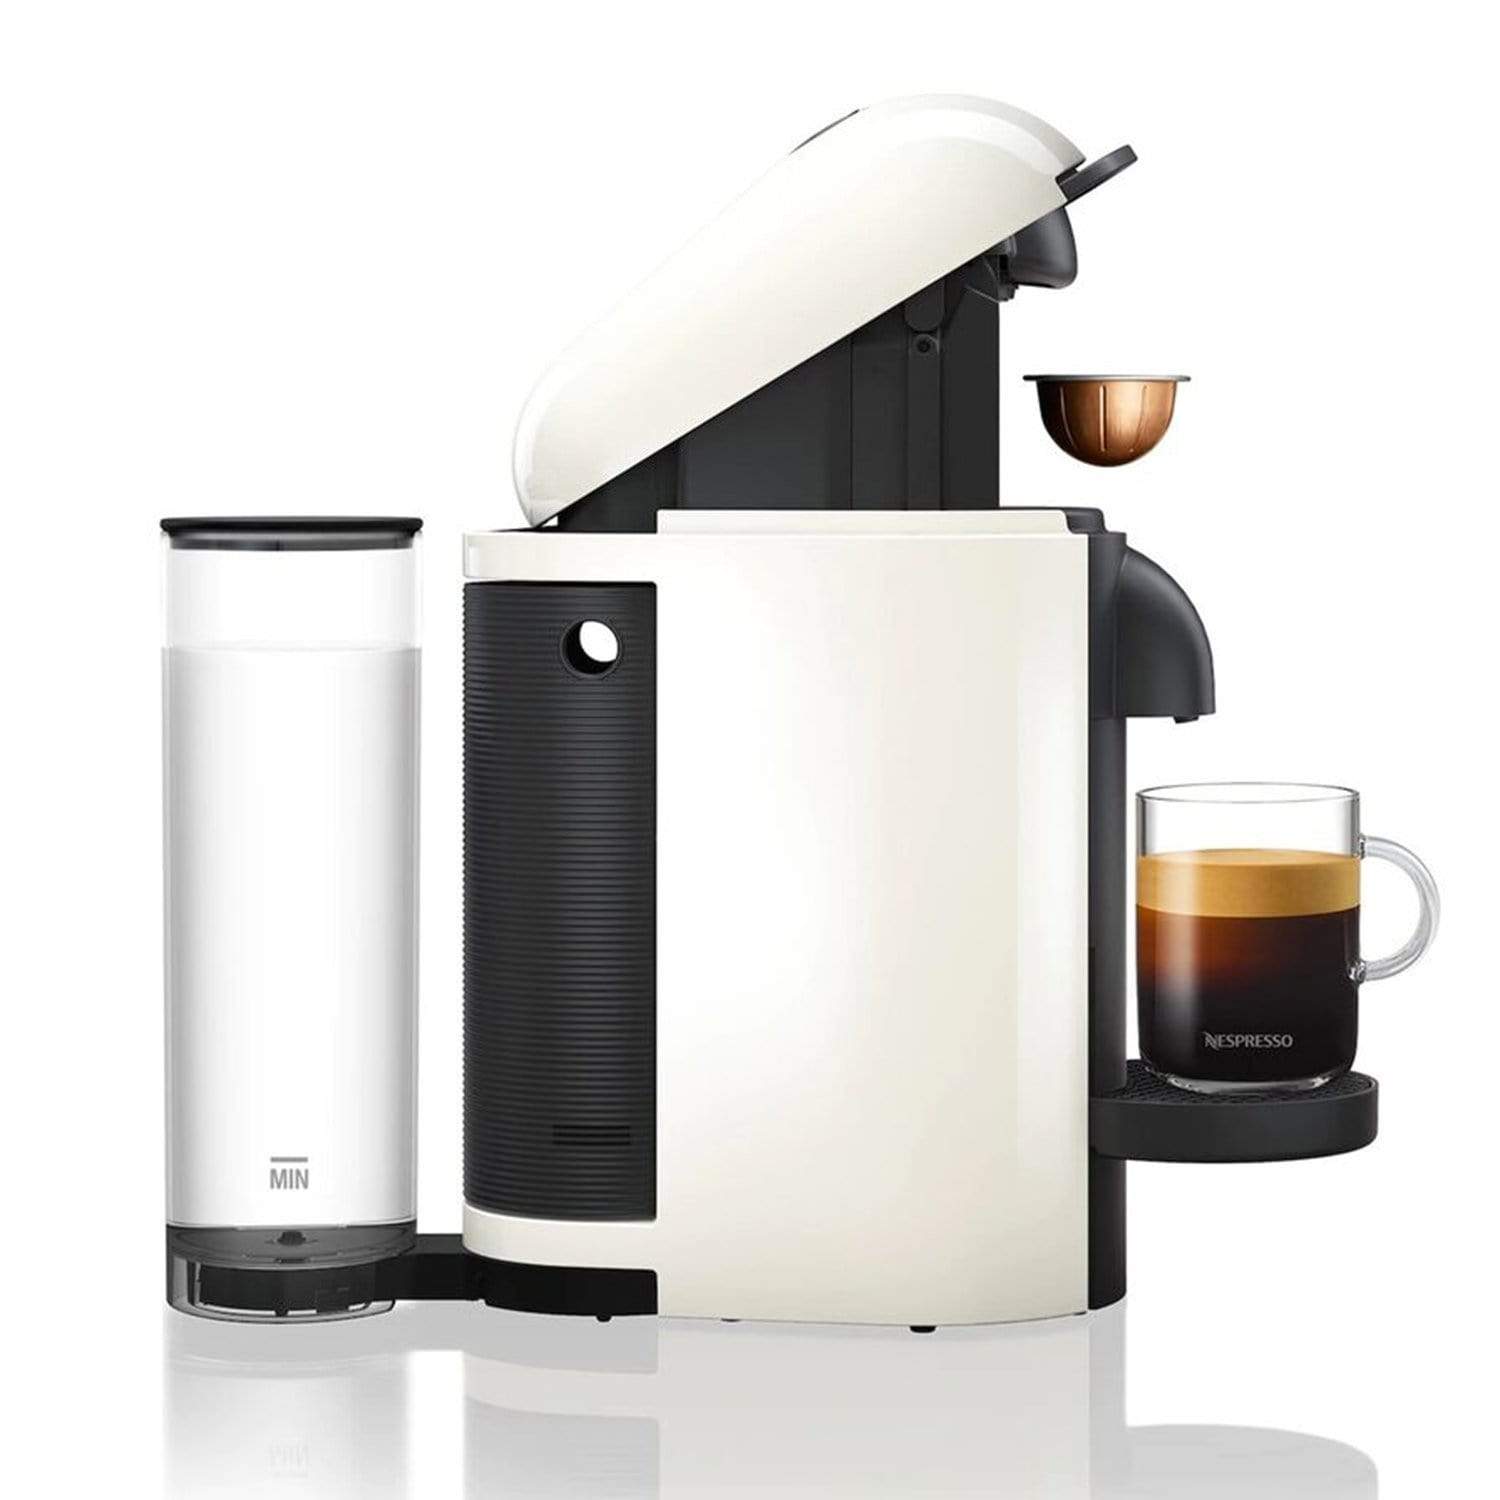 Nespresso ماكينة صنع القهوة فيرتو بلس - أبيض - GCB2-GB-WH-NE1 - Jashanmal Home